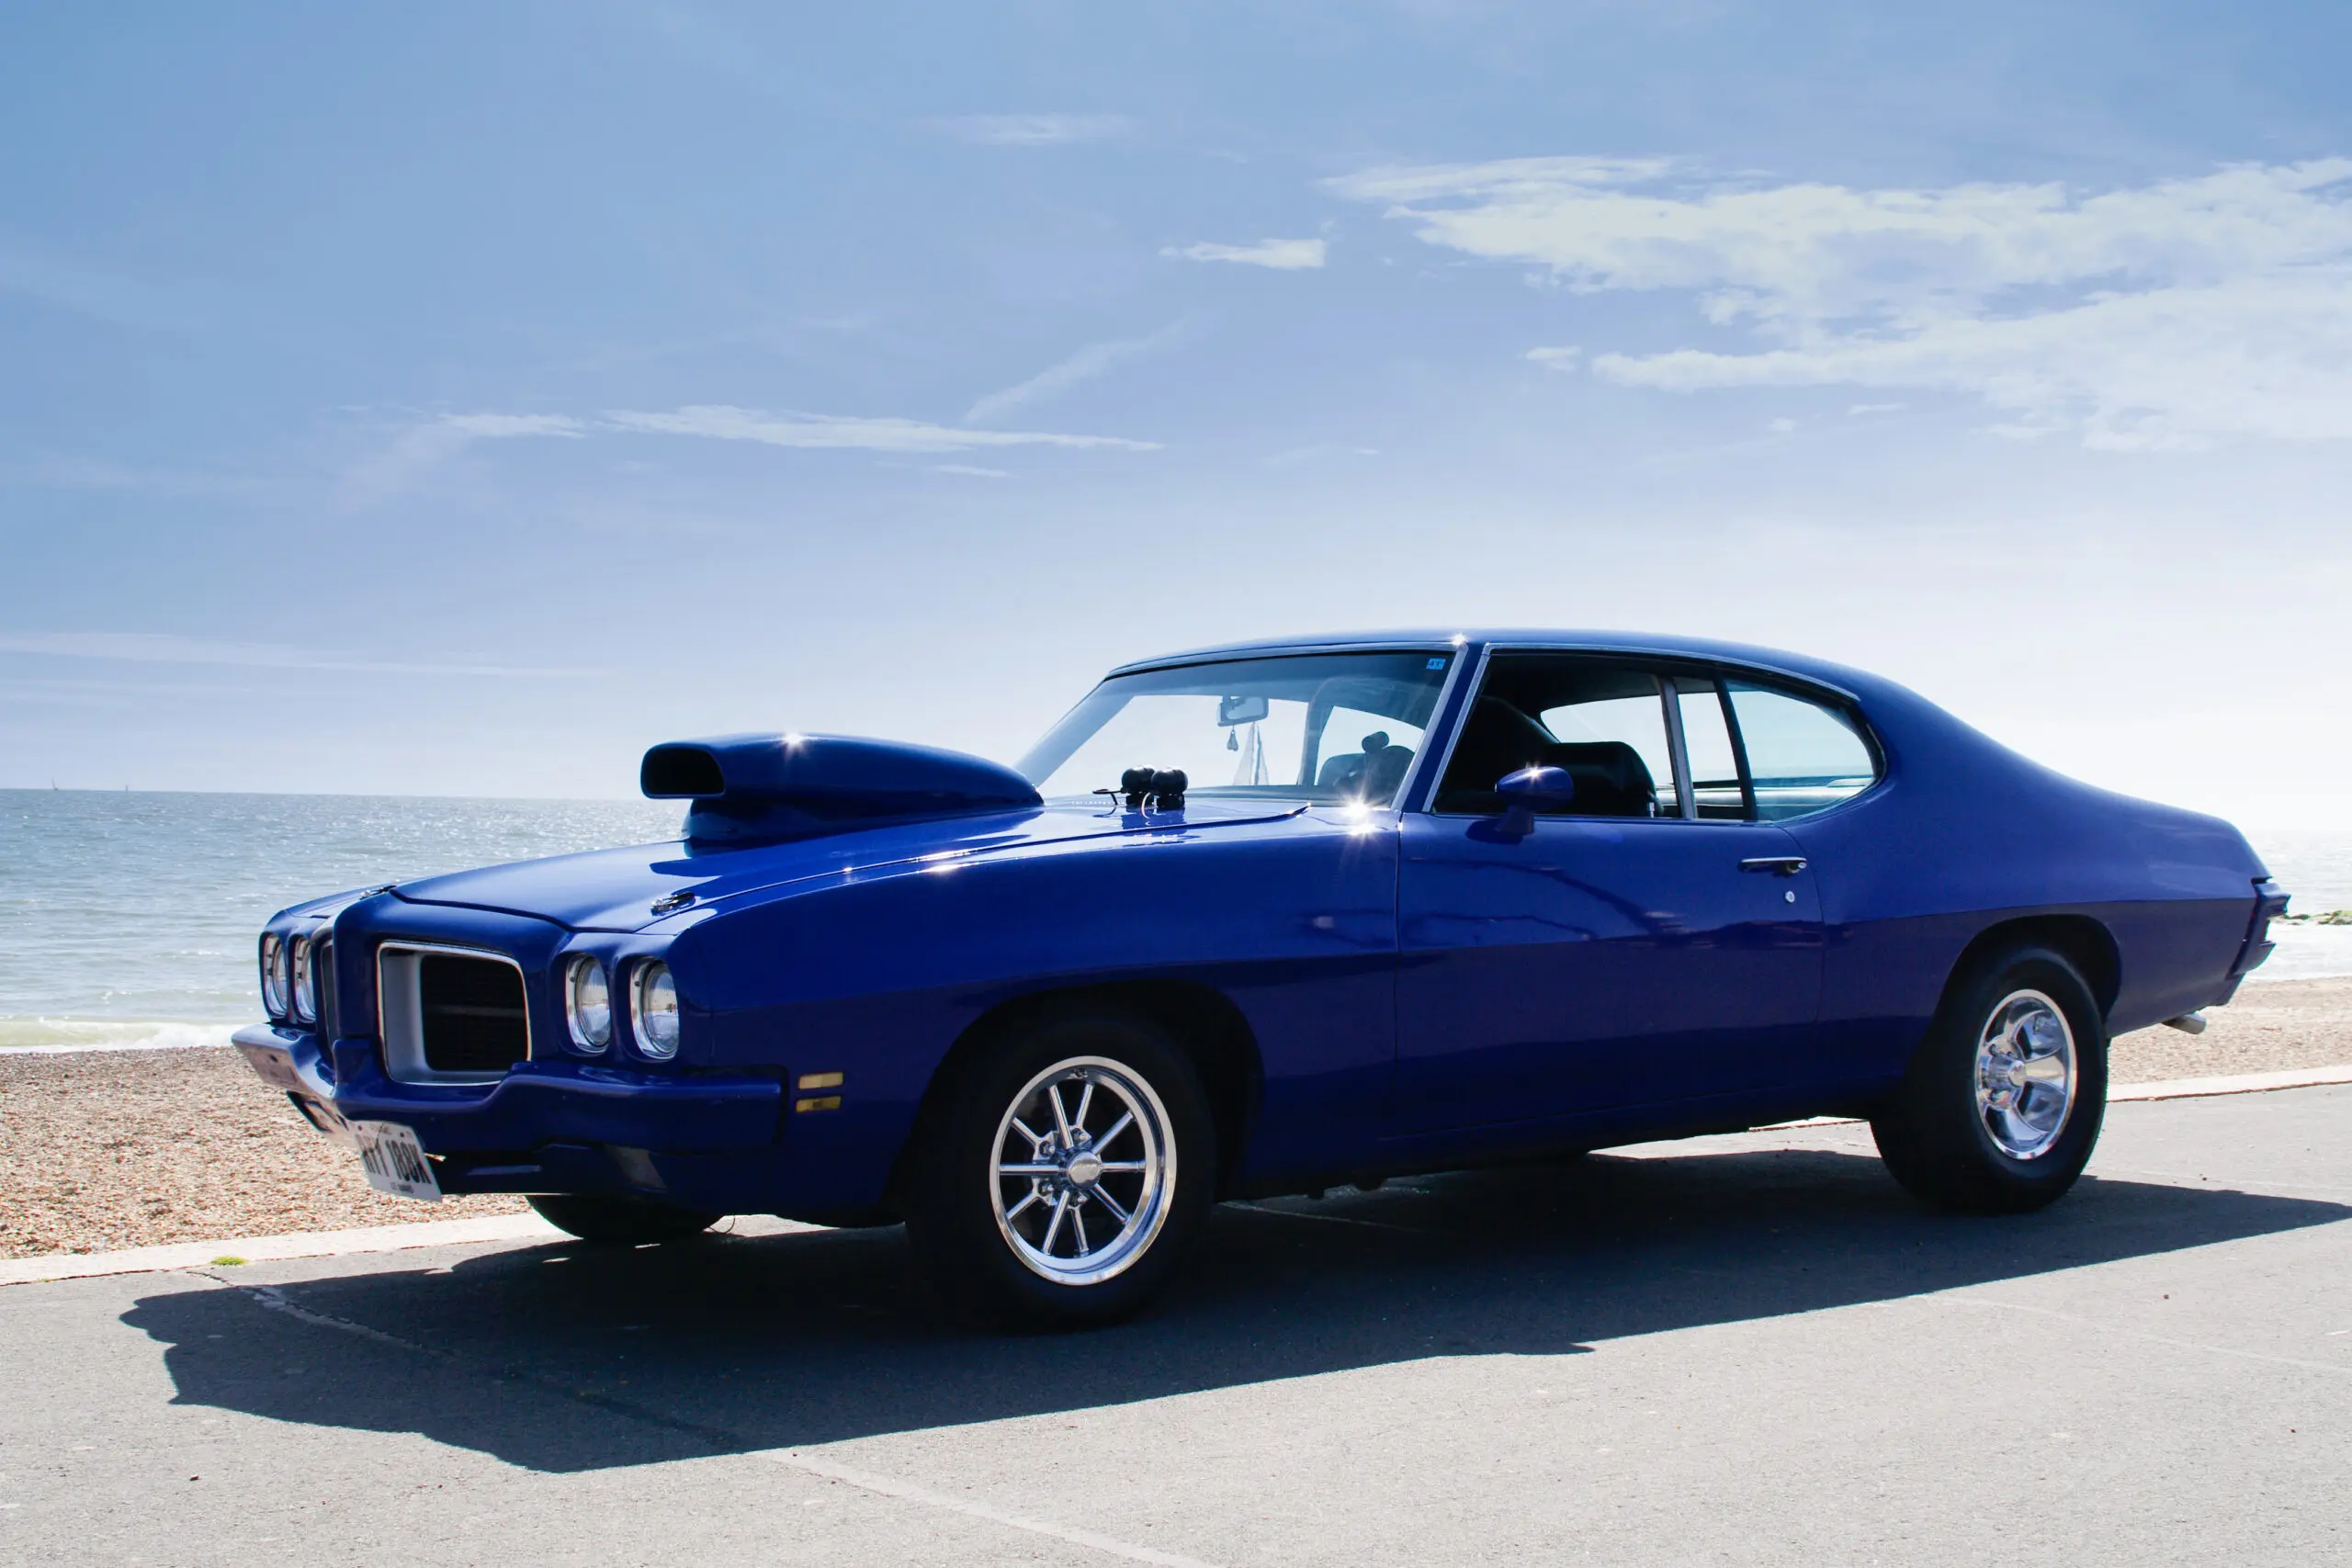 Wandbild (3710) blue Pontiac präsentiert: Technik,Auto